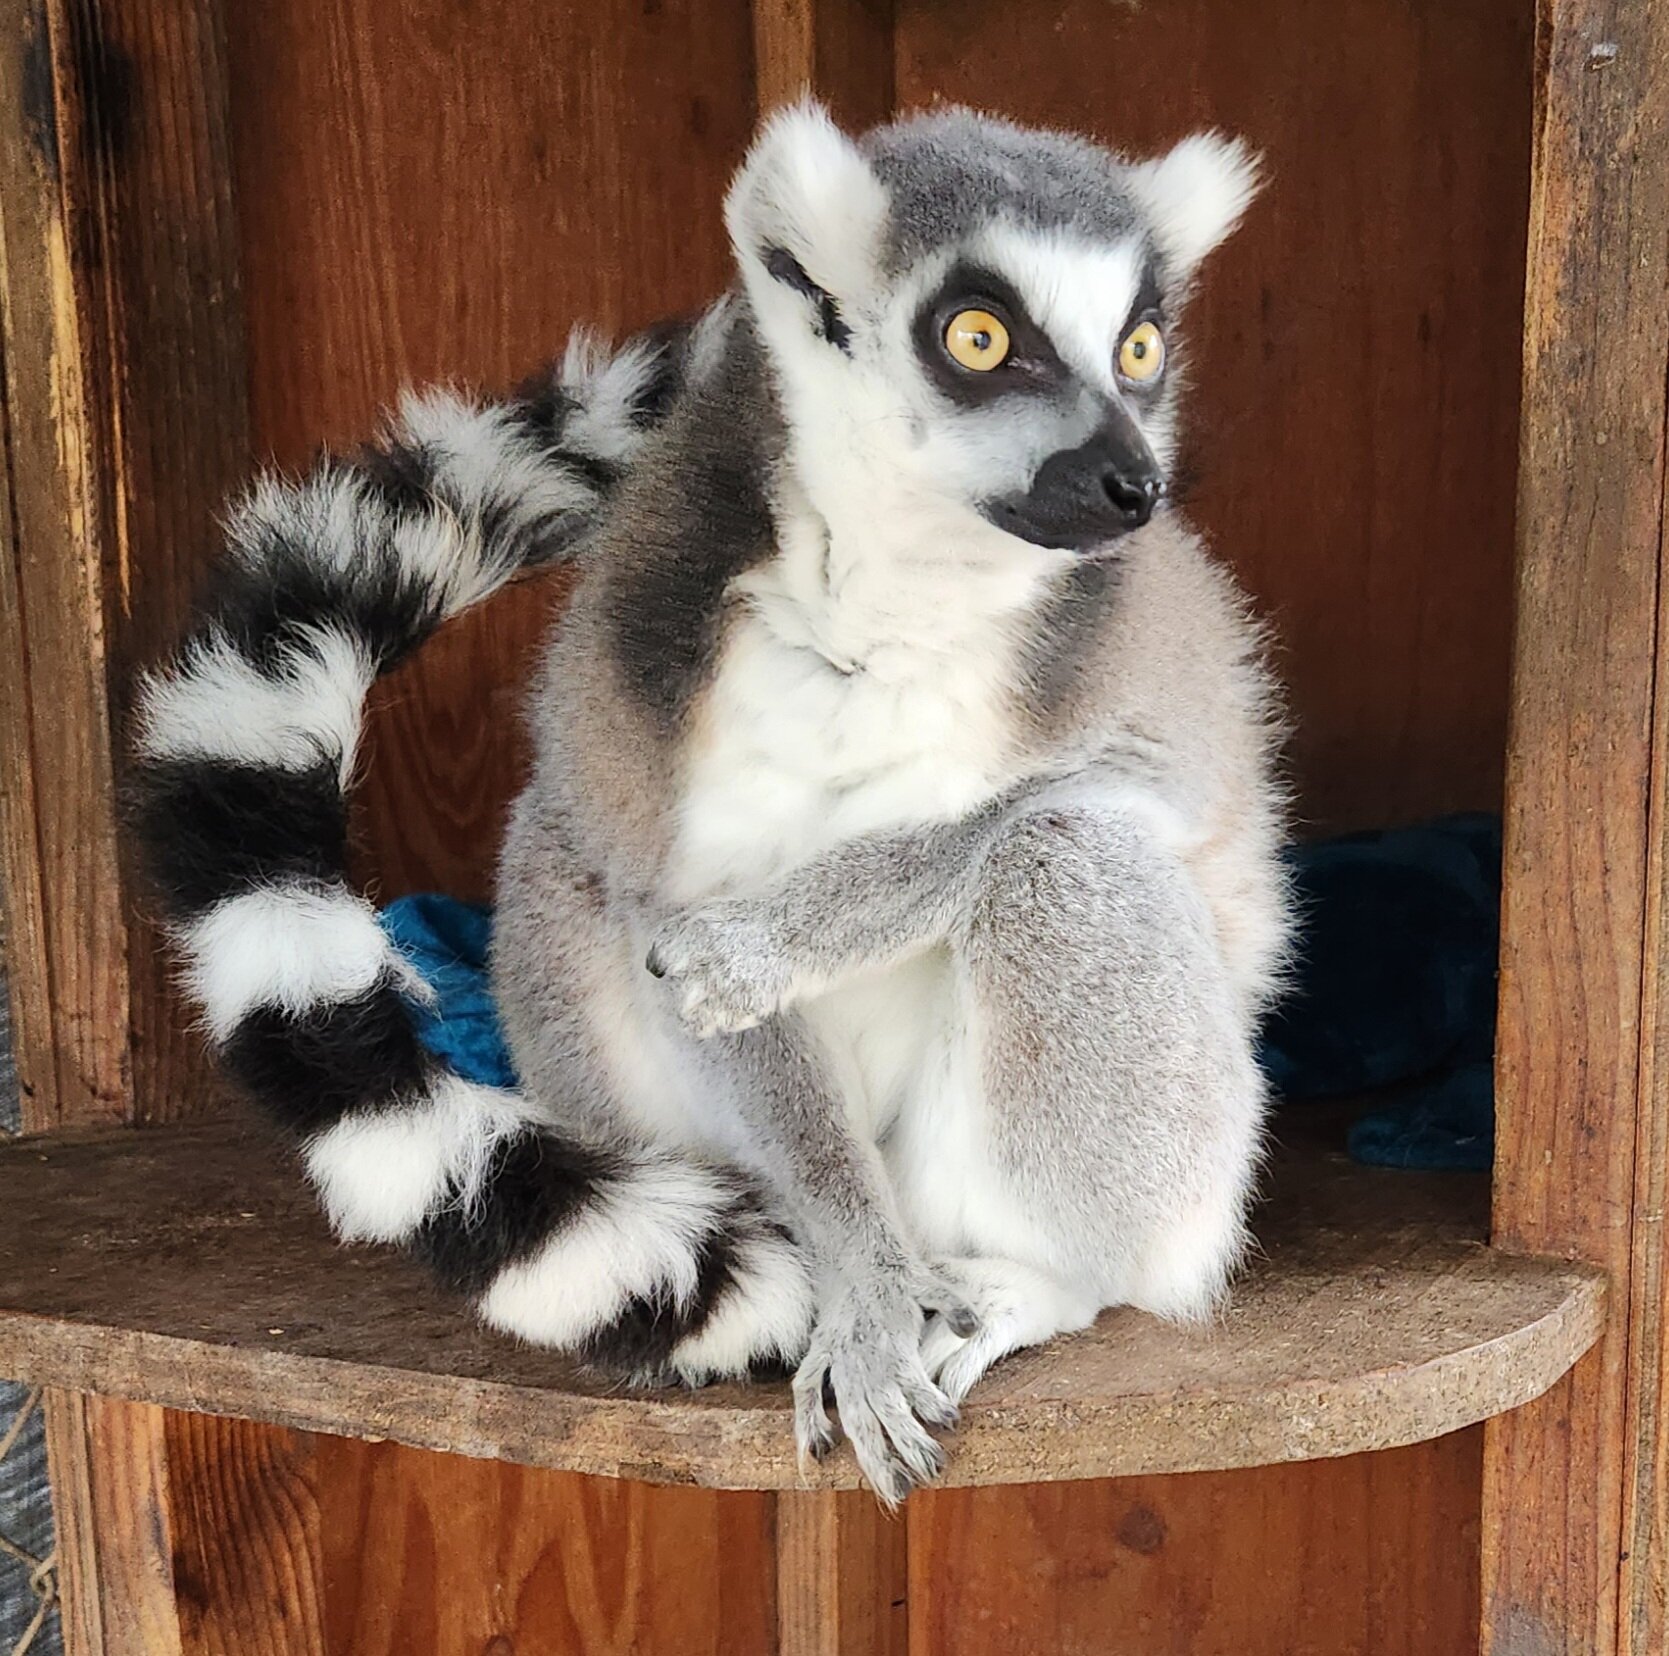 Lemur Encounter – Hamilton Zoo